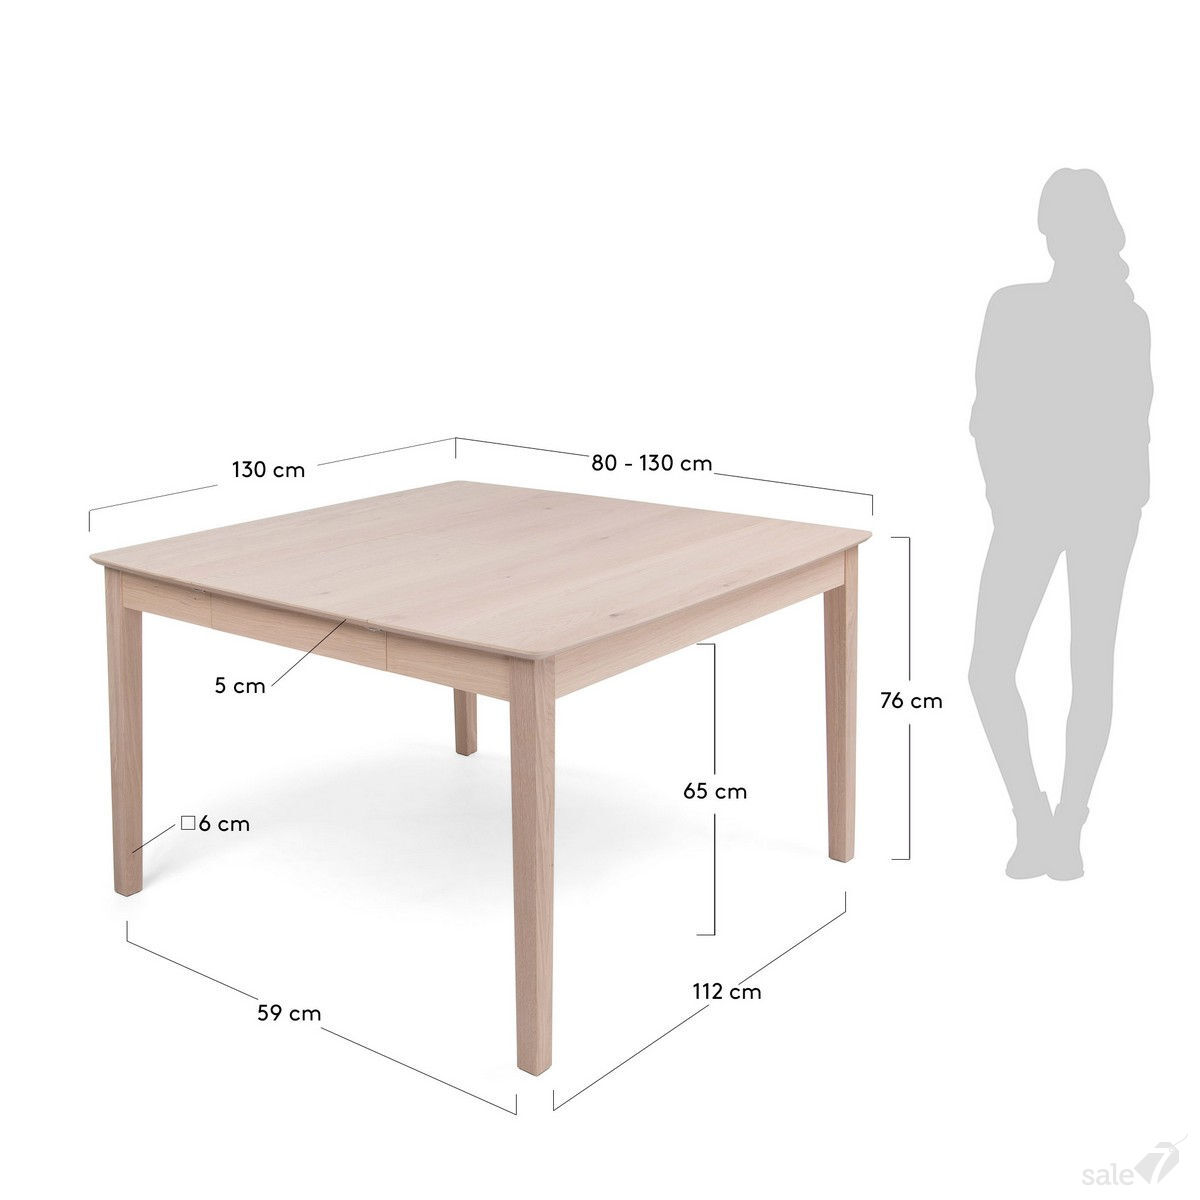 Высота столовых. Высота обеденного стола стандарт. Размер столешницы кухонного стола стандарт. Ширина обеденного стола стандарт. Размер кухонного стола стандарт высота.